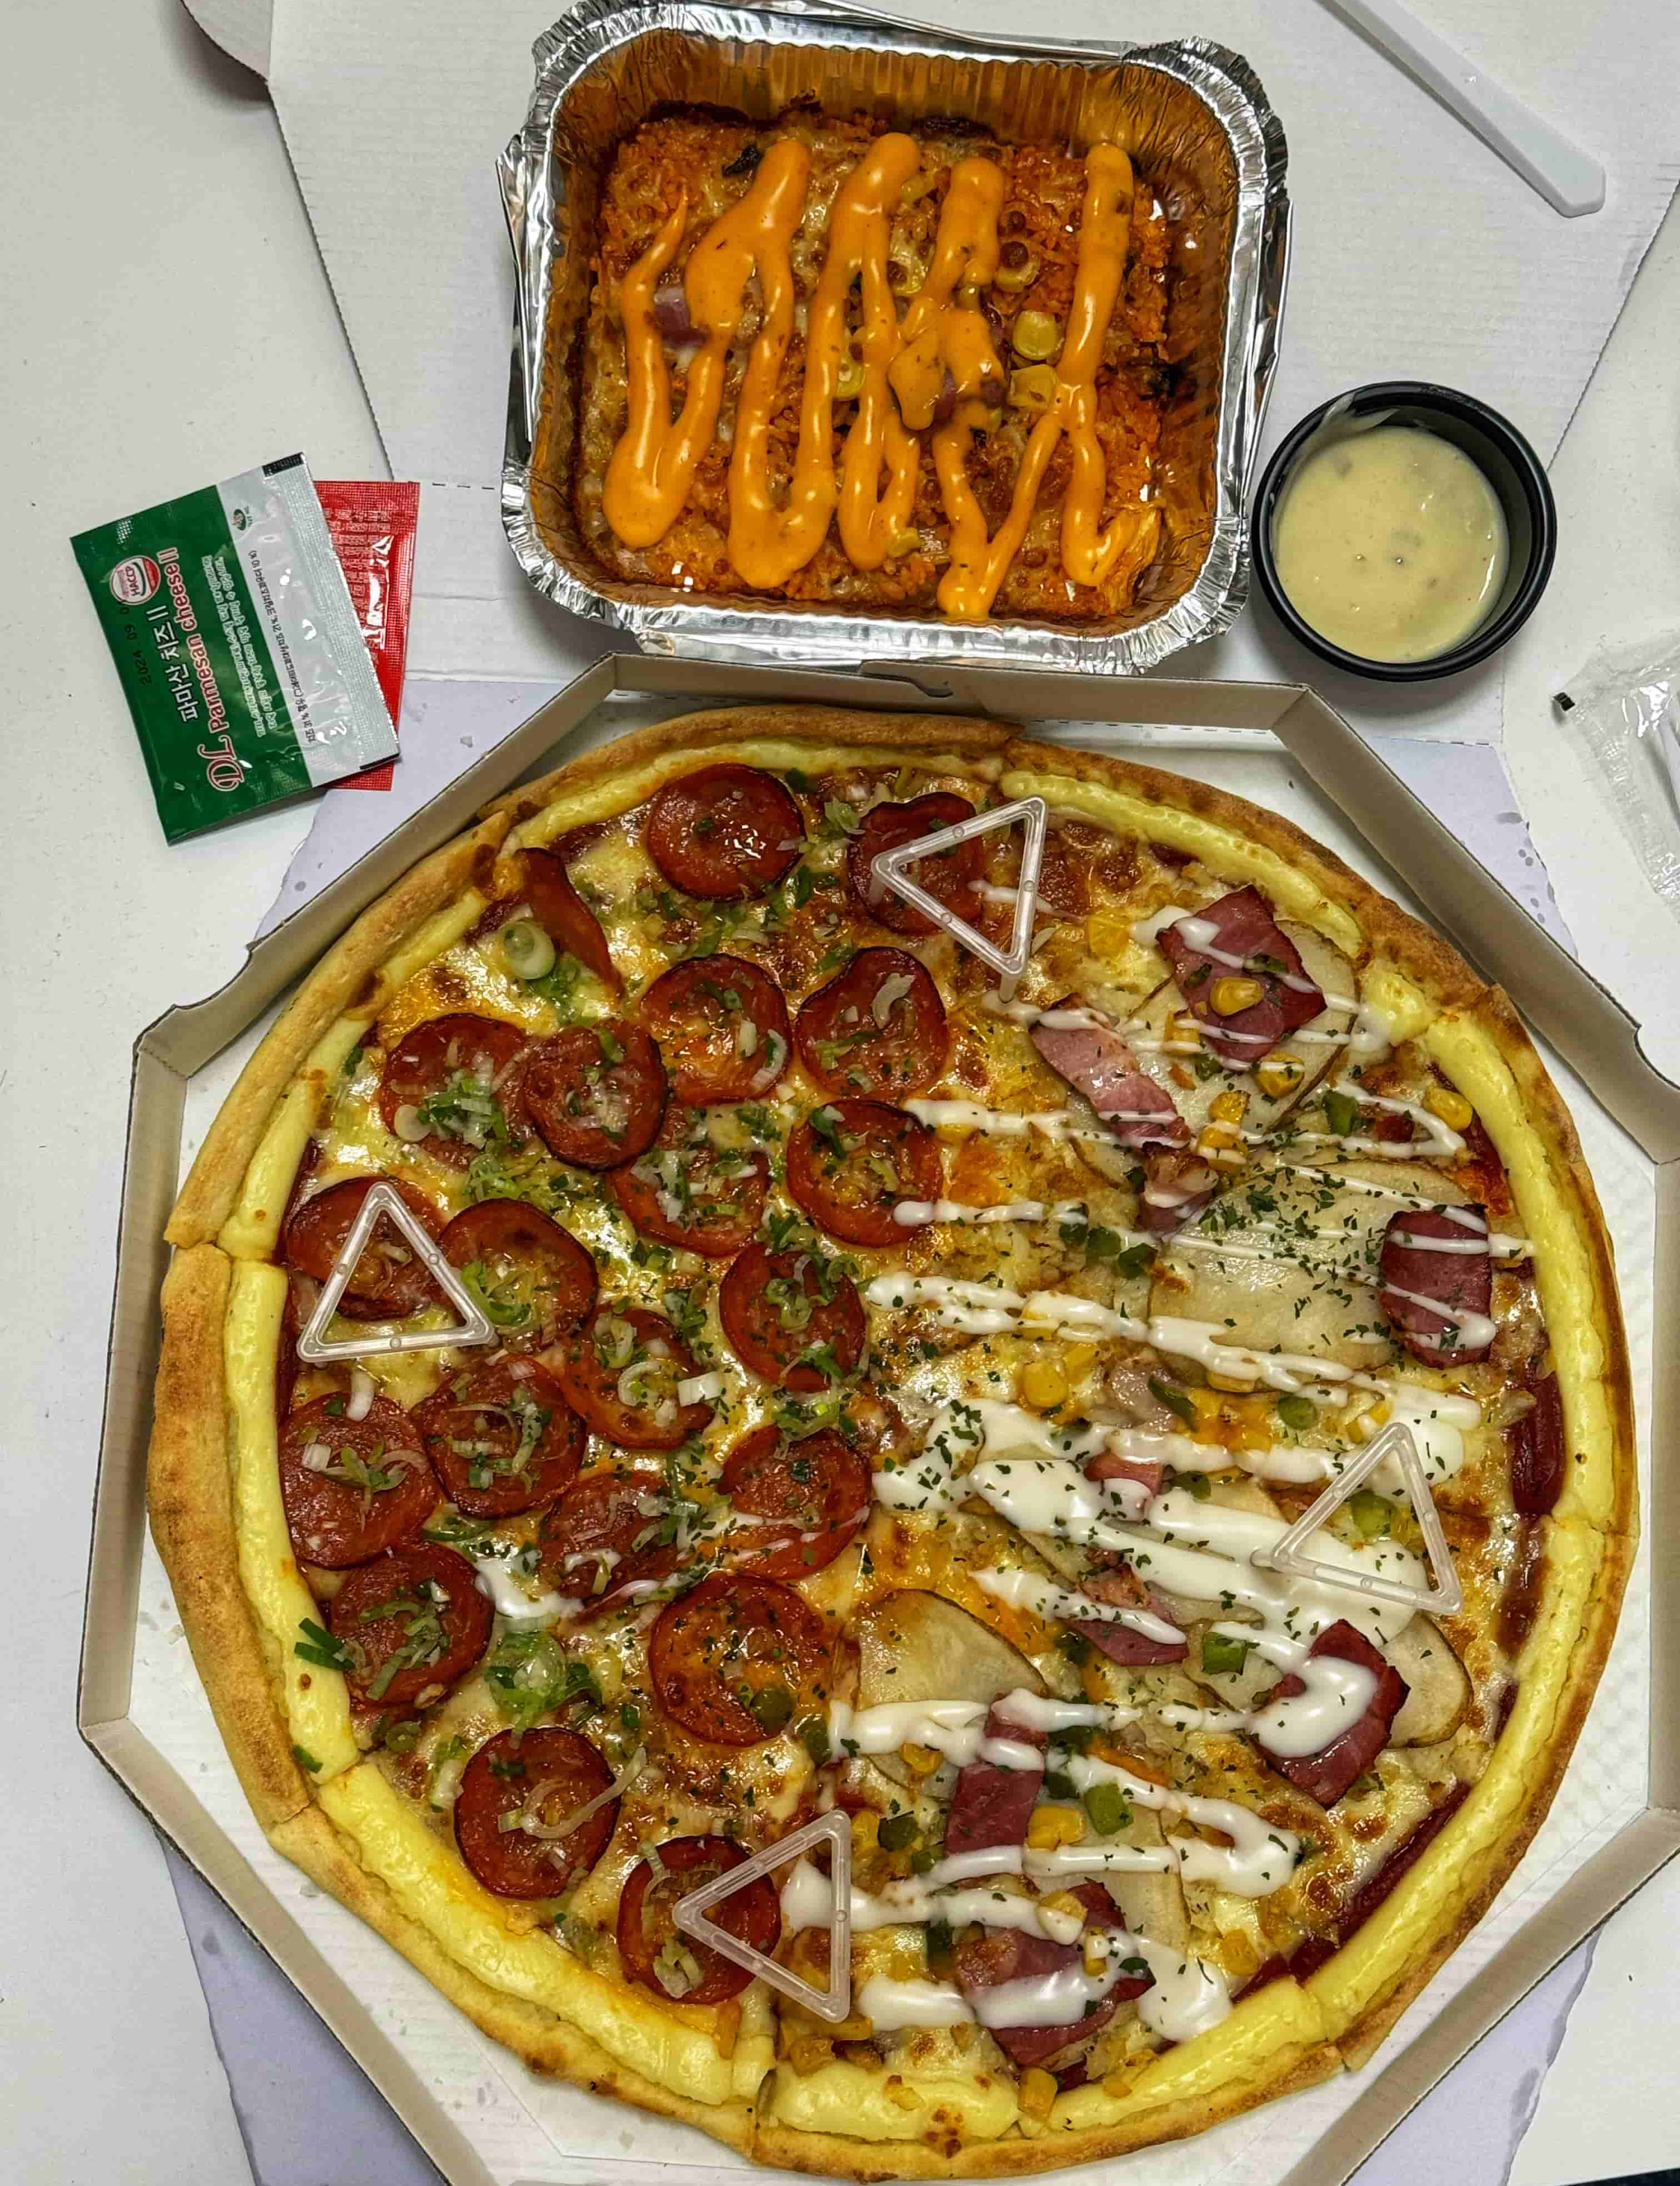 배달 피자 맛집 &amp;#39;피자와일드&amp;#39;에서 주문한 하프 앤 하프 피자와 리뷰이벤트로 받은 베이컨 김치 치즈 필라프를 함께 찍은 사진